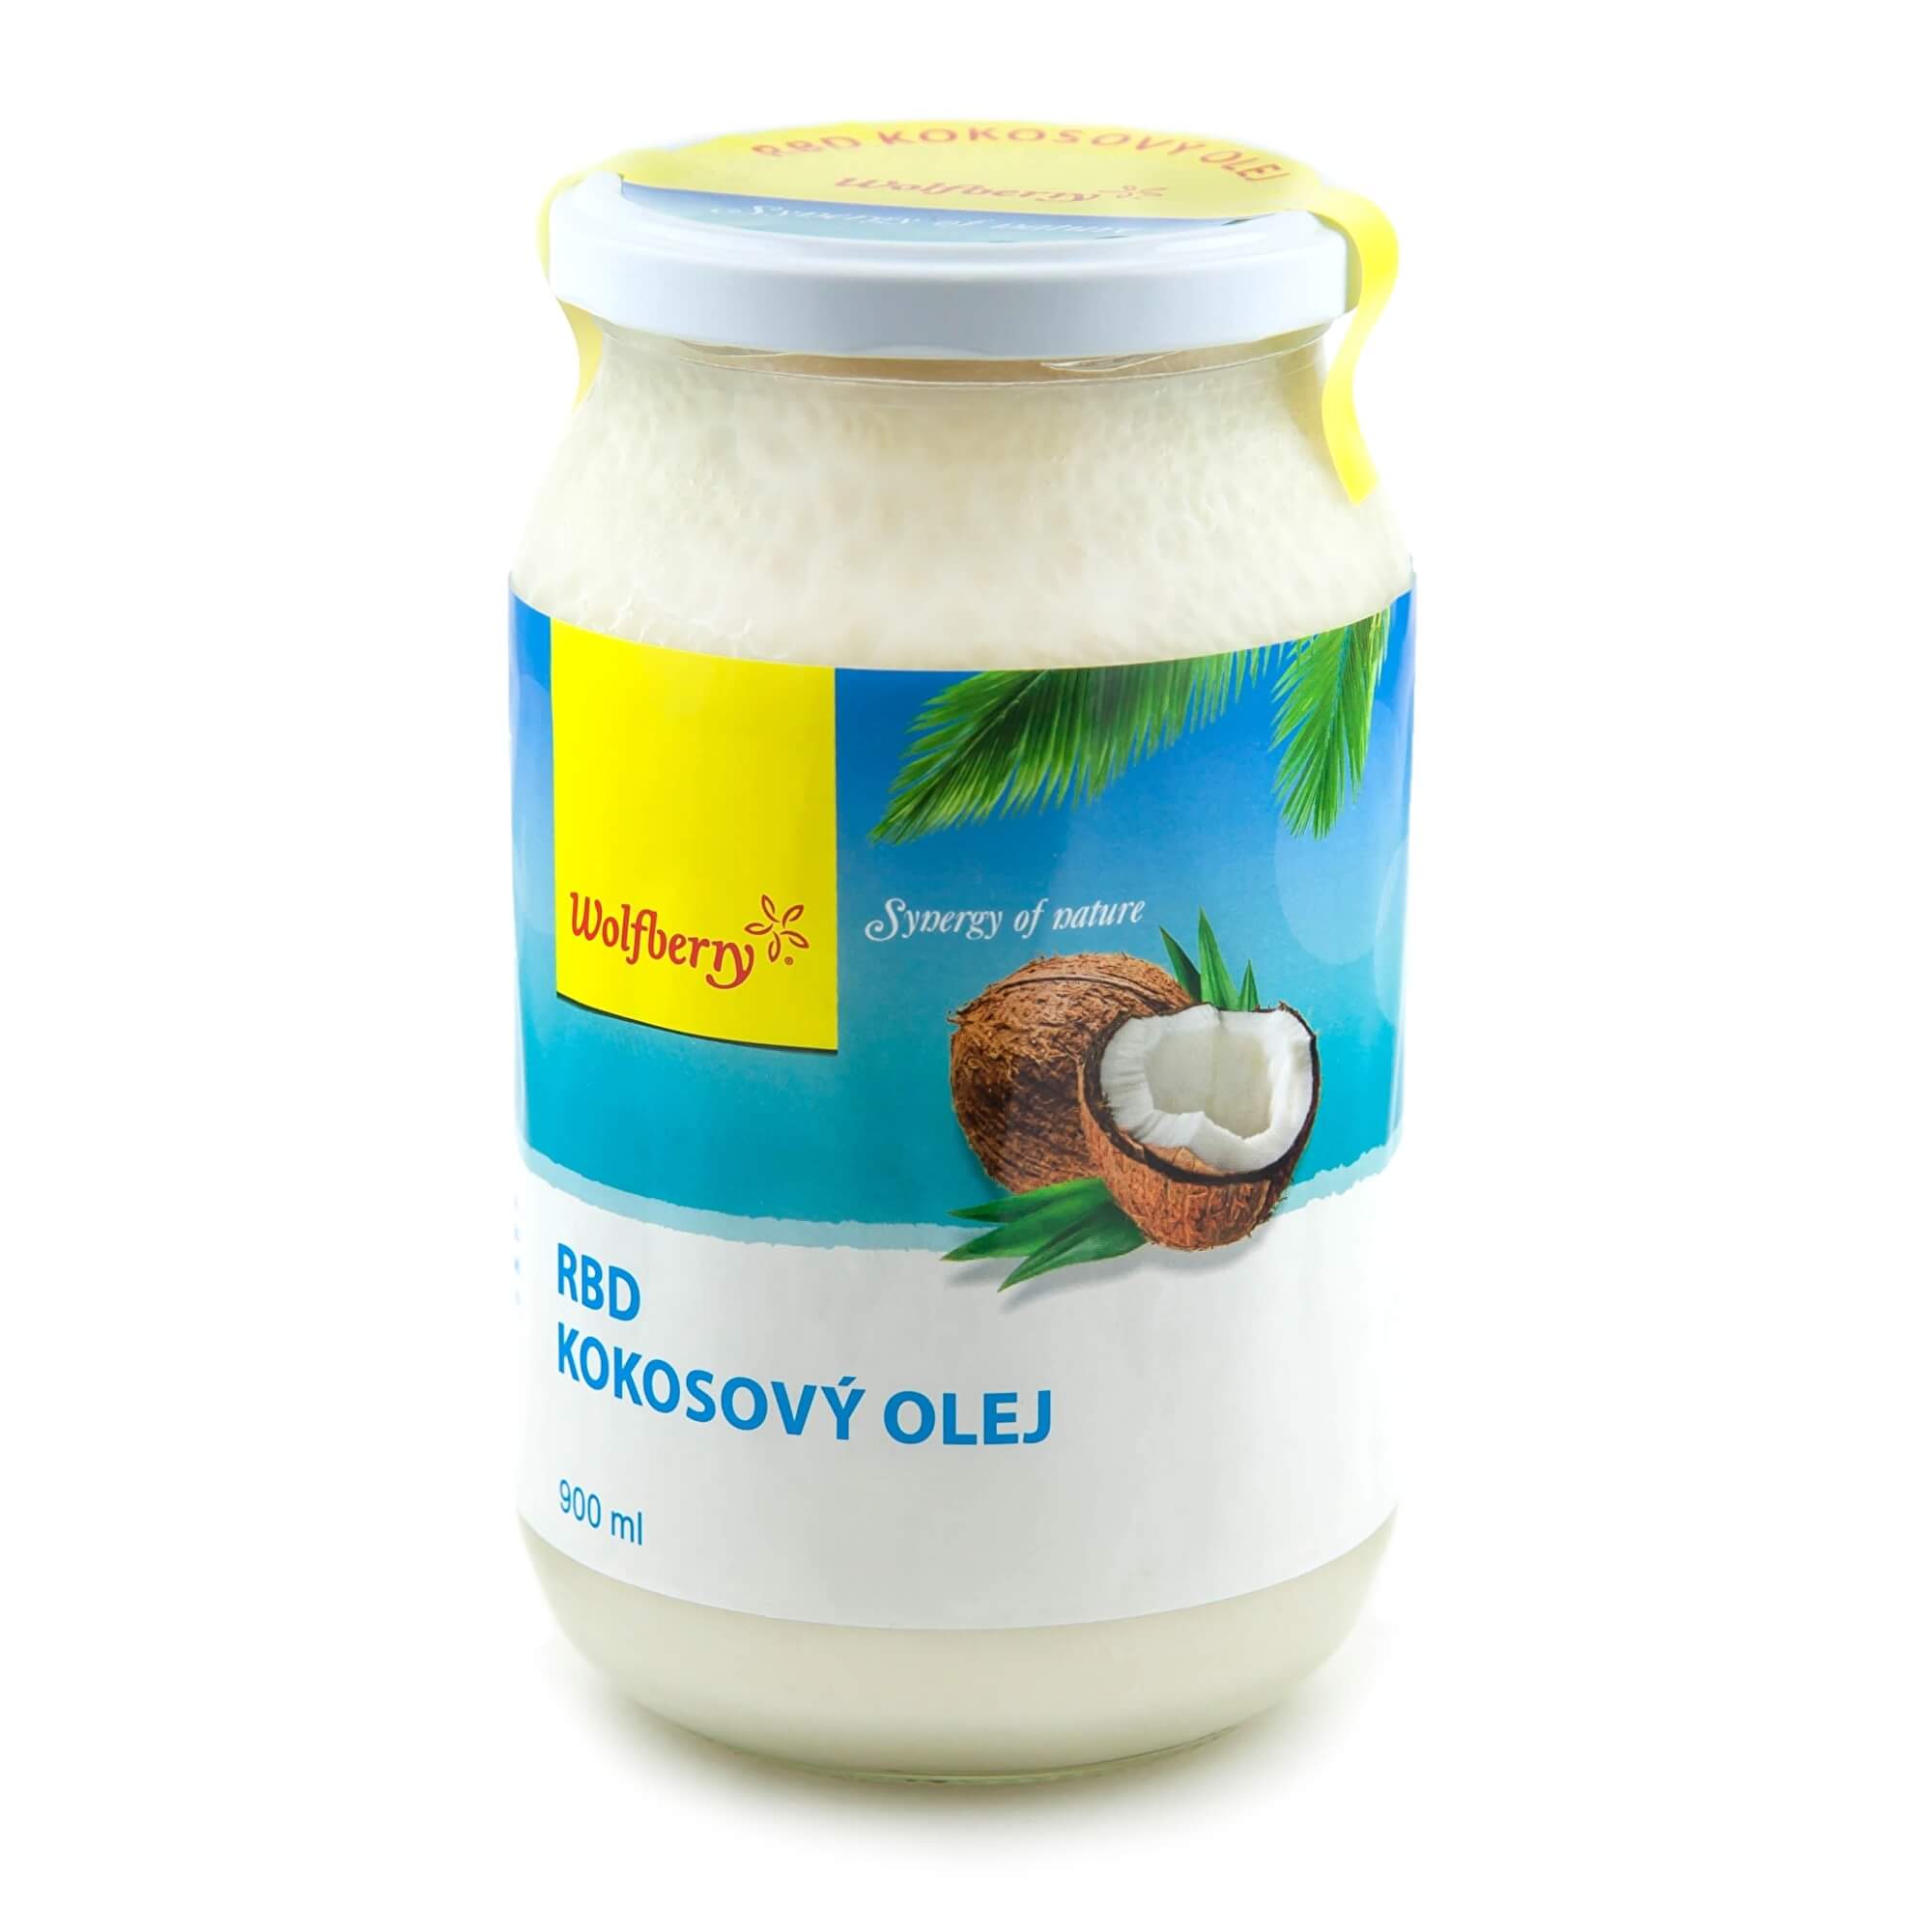 Zobrazit detail výrobku Wolfberry RBD Kokosový olej 900 ml + 2 měsíce na vrácení zboží